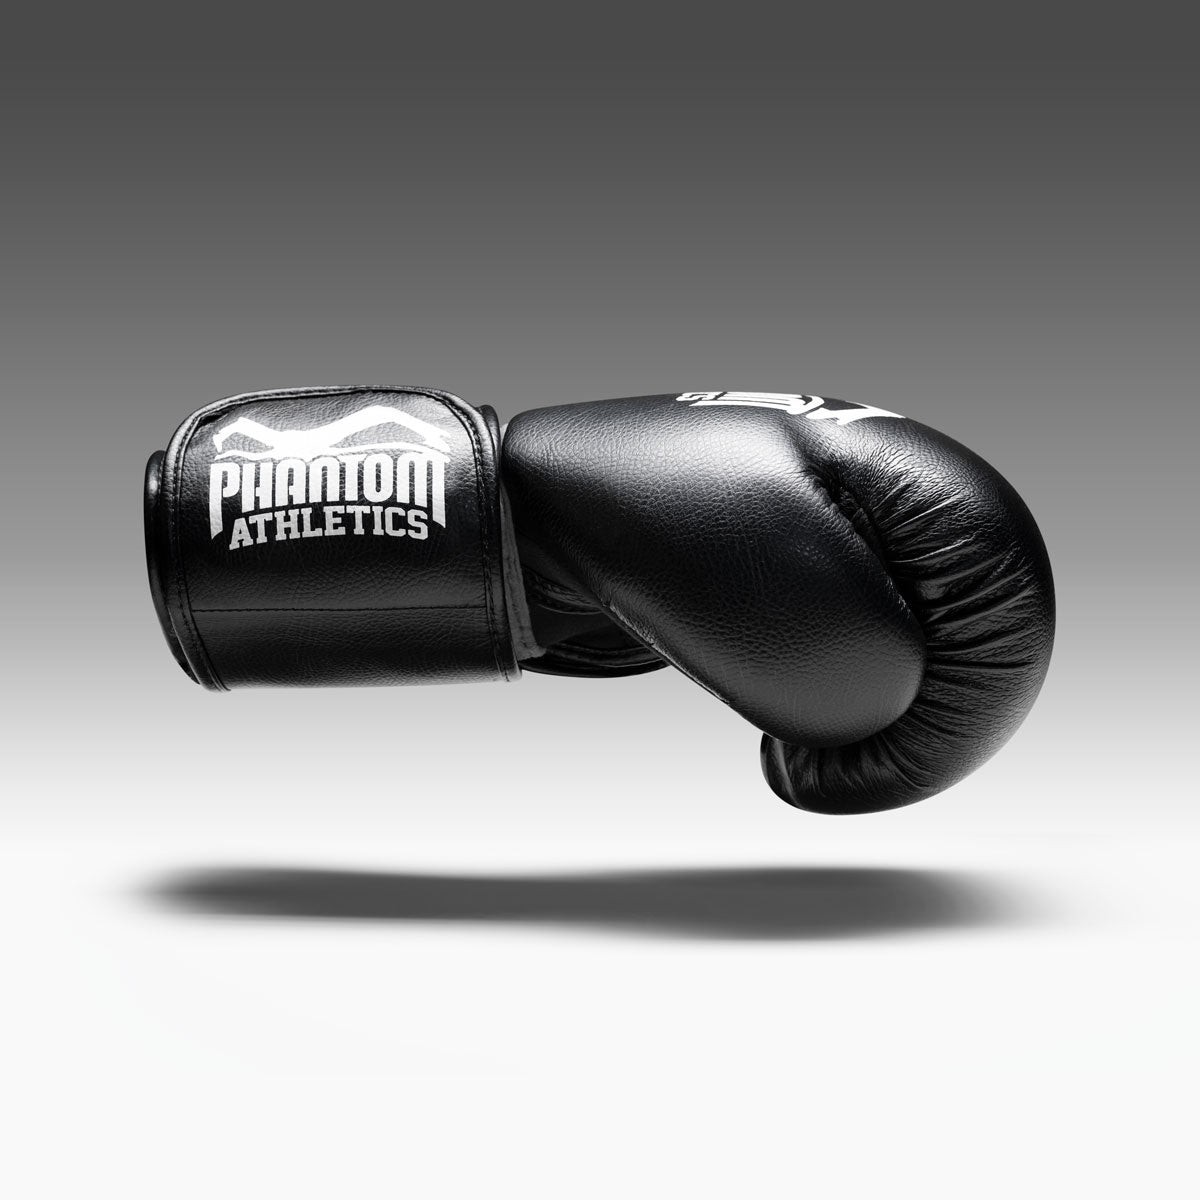 Der Phantom Elite ATF Boxhandschuh mit einer hervorragenden Passform für Amateure und Profis.